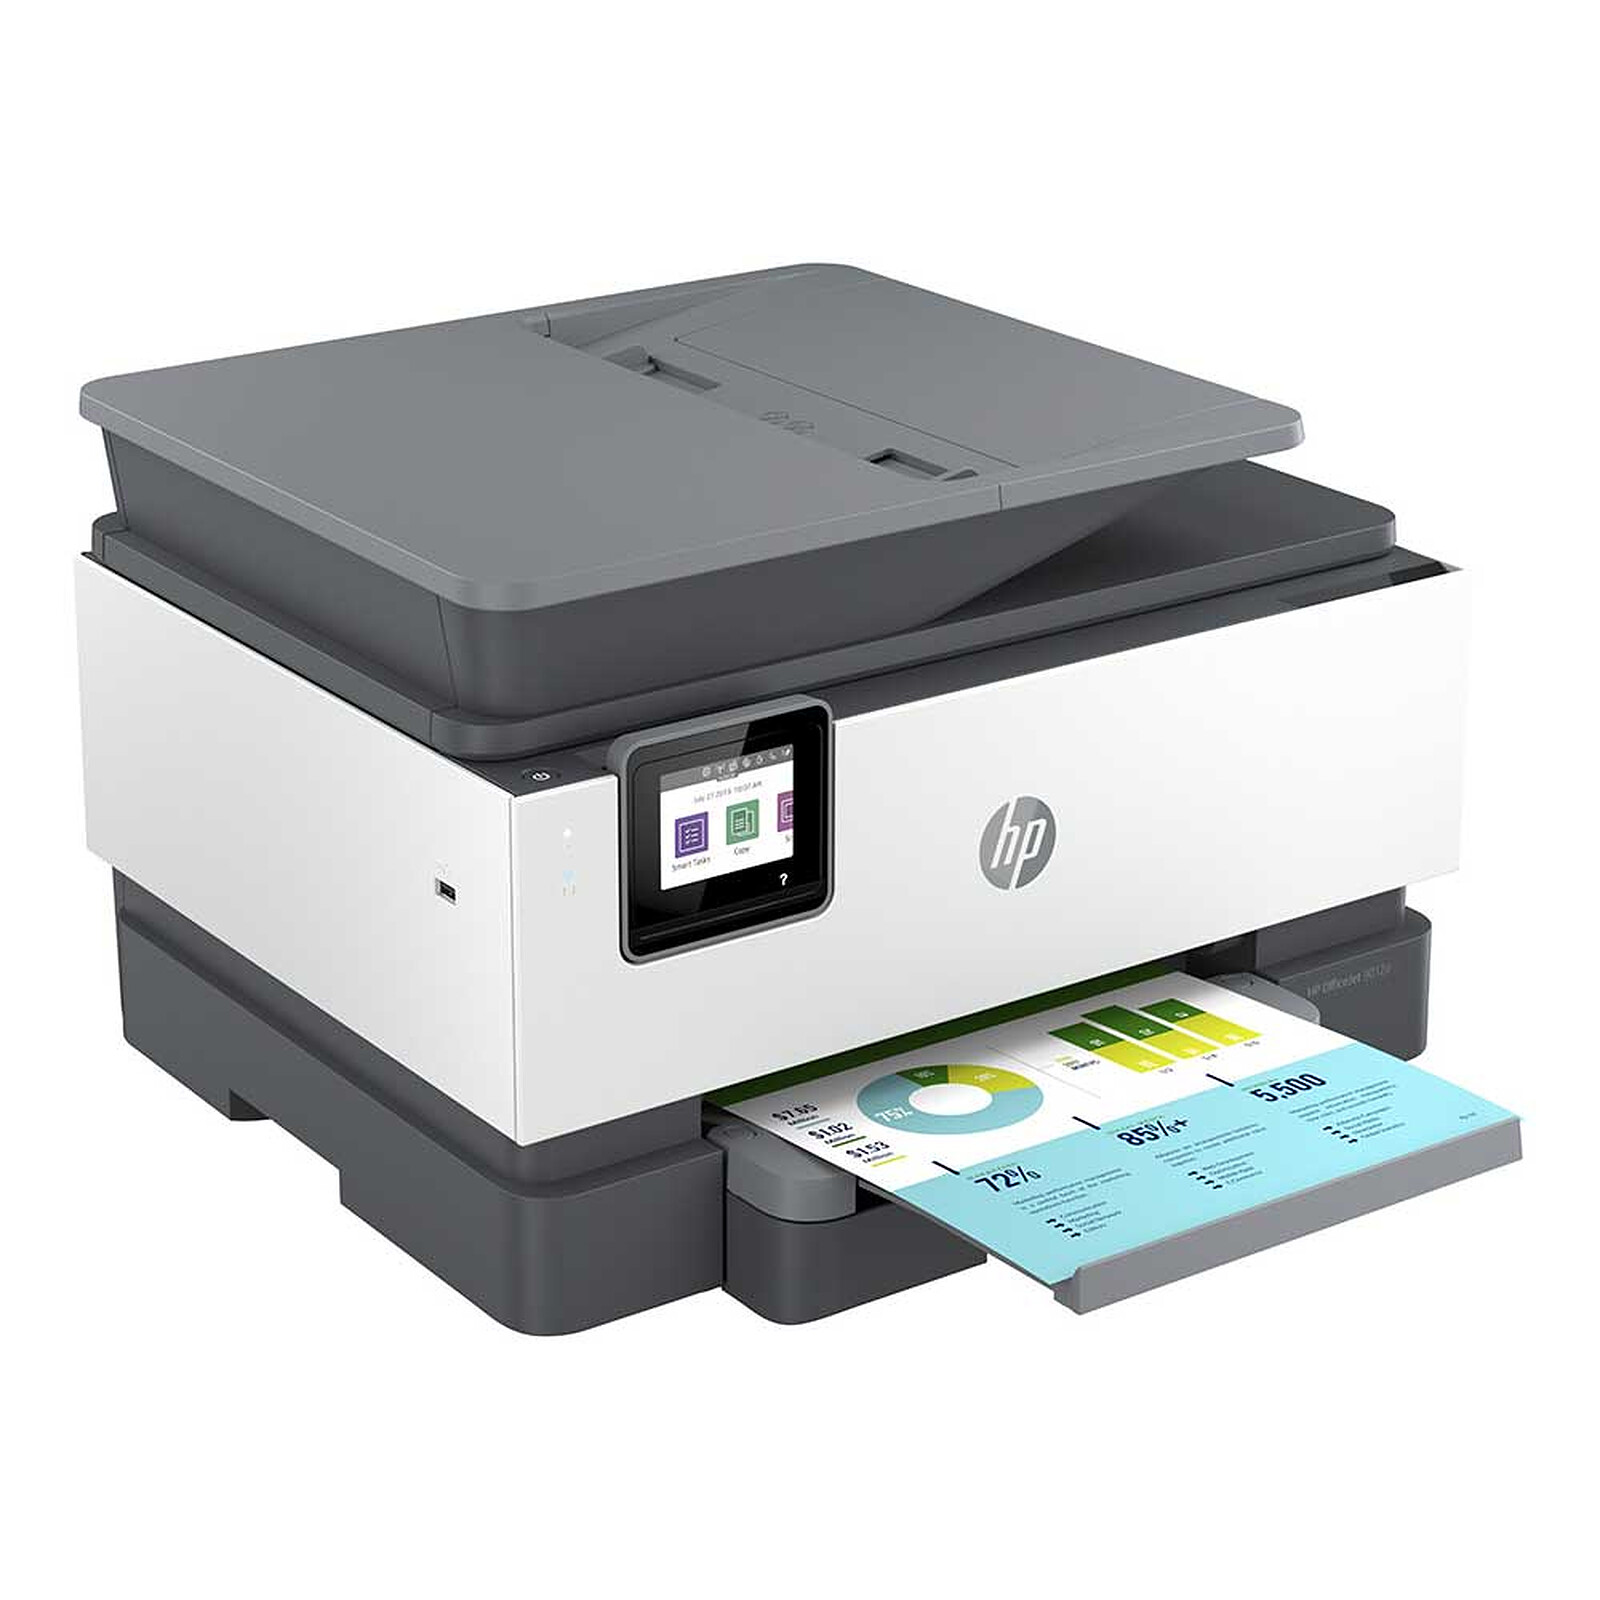 Cartouche d'encre HP OfficeJet Pro 8730 pas cher –